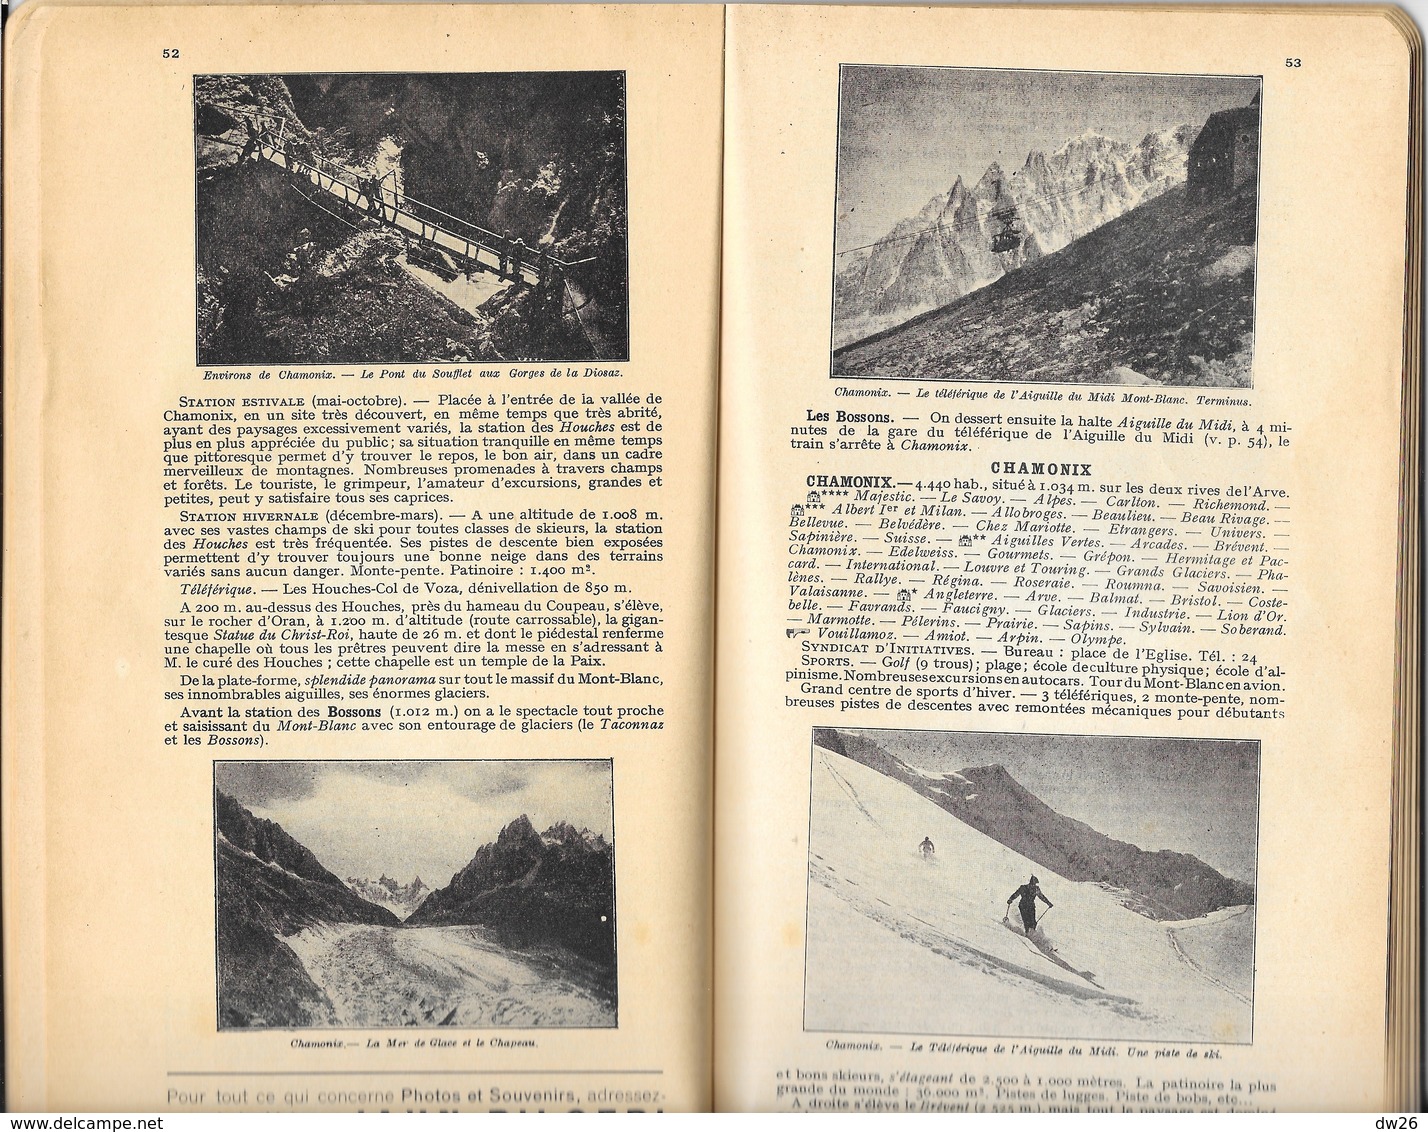 Les Guides Rouges Touristiques - Lyonnais Savoie Dauphiné - Edition Baneton Thiolier - 1956 - Tourism